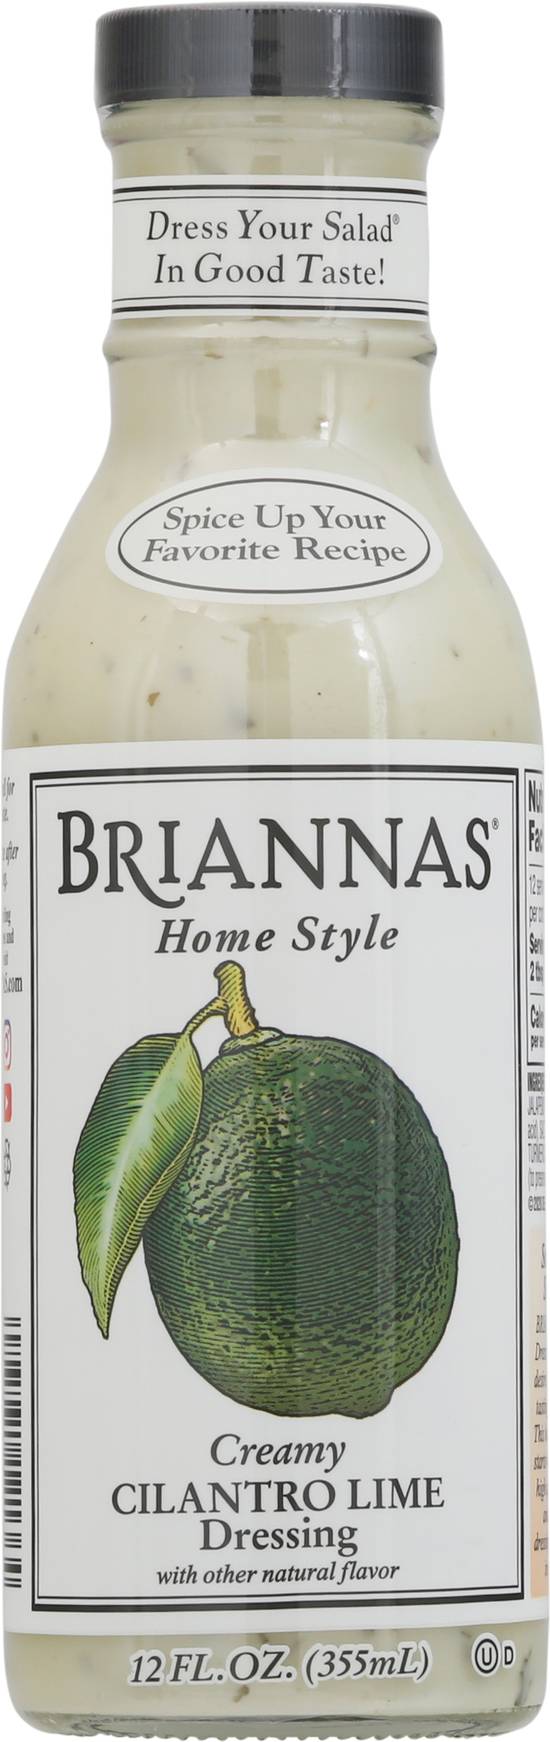 Briannas Creamy Cilantro Lime Dressing